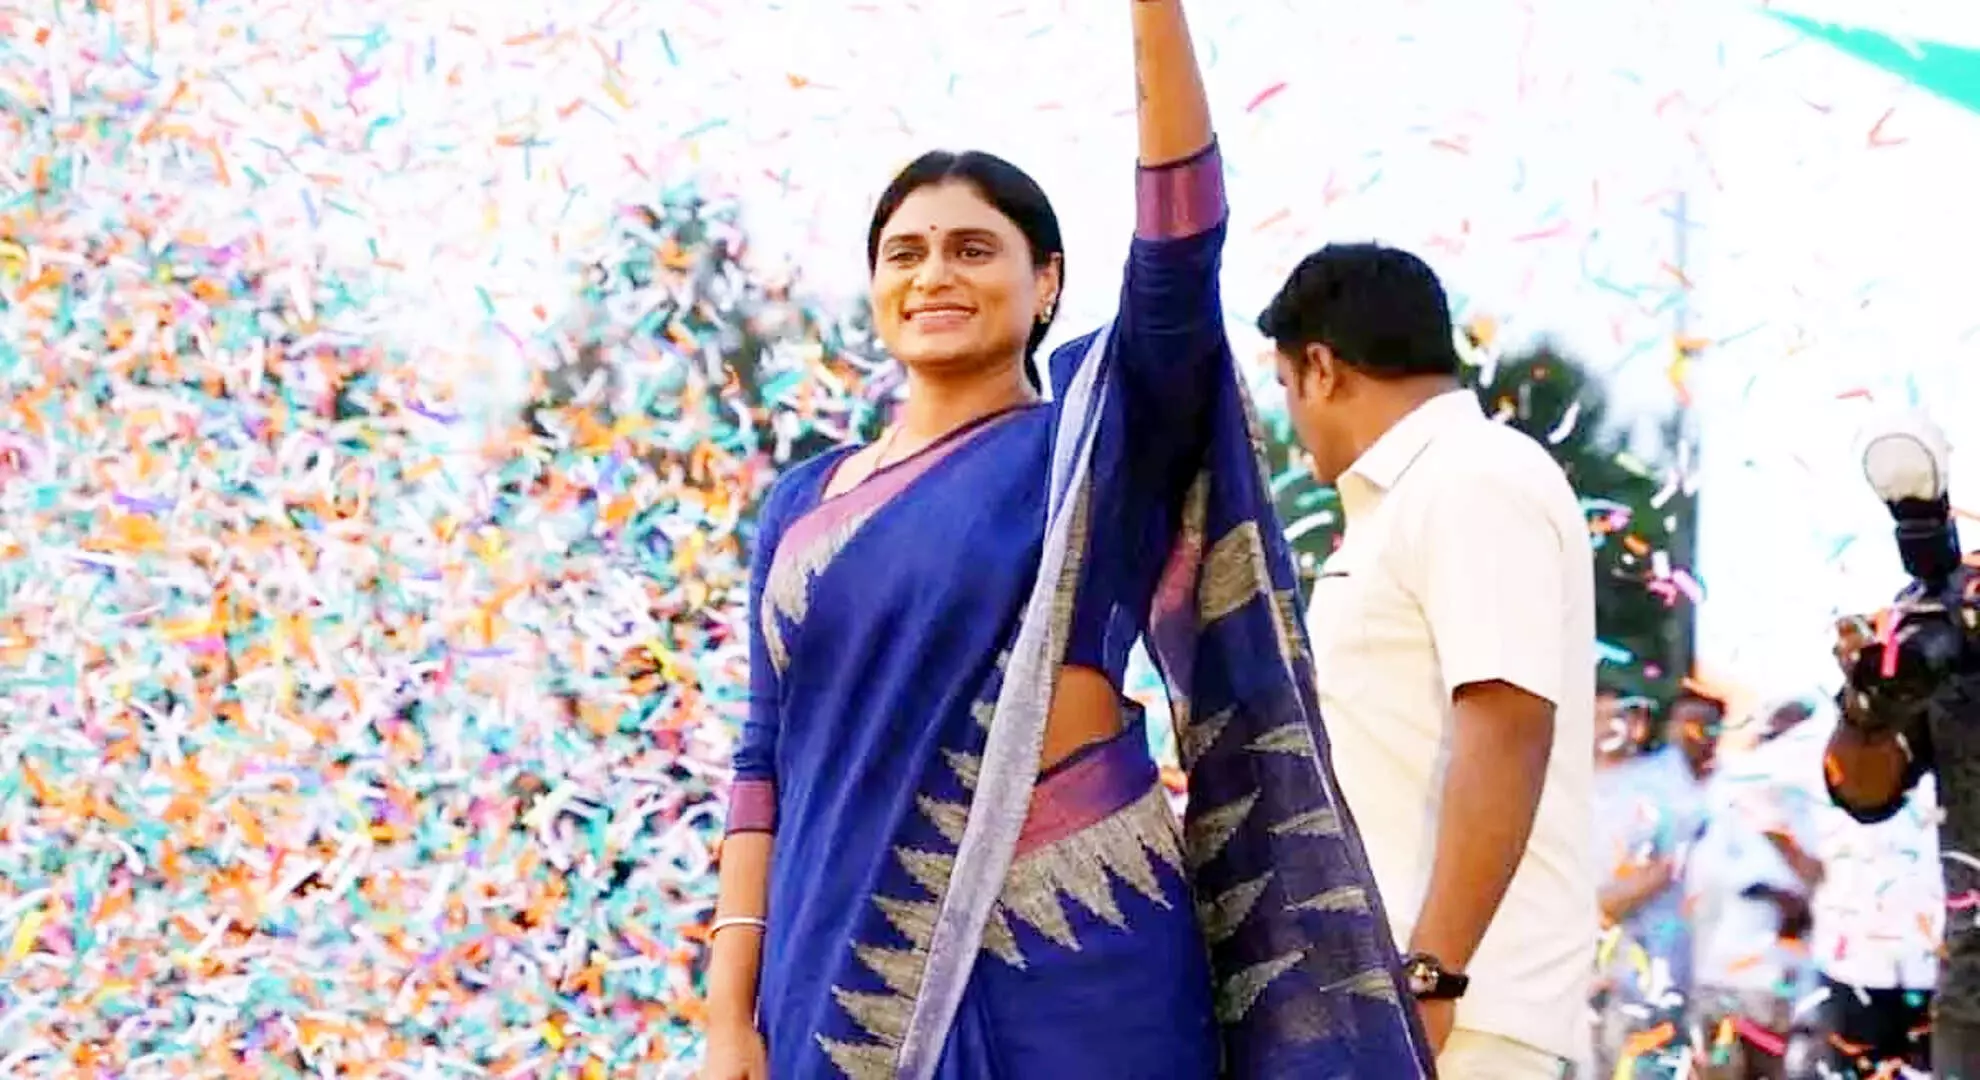 वाईएस शर्मिला आज कडप्पा का दौरा करेंगी, चुनाव के लिए उम्मीदवारों की पहली सूची की घोषणा करने की संभावना है